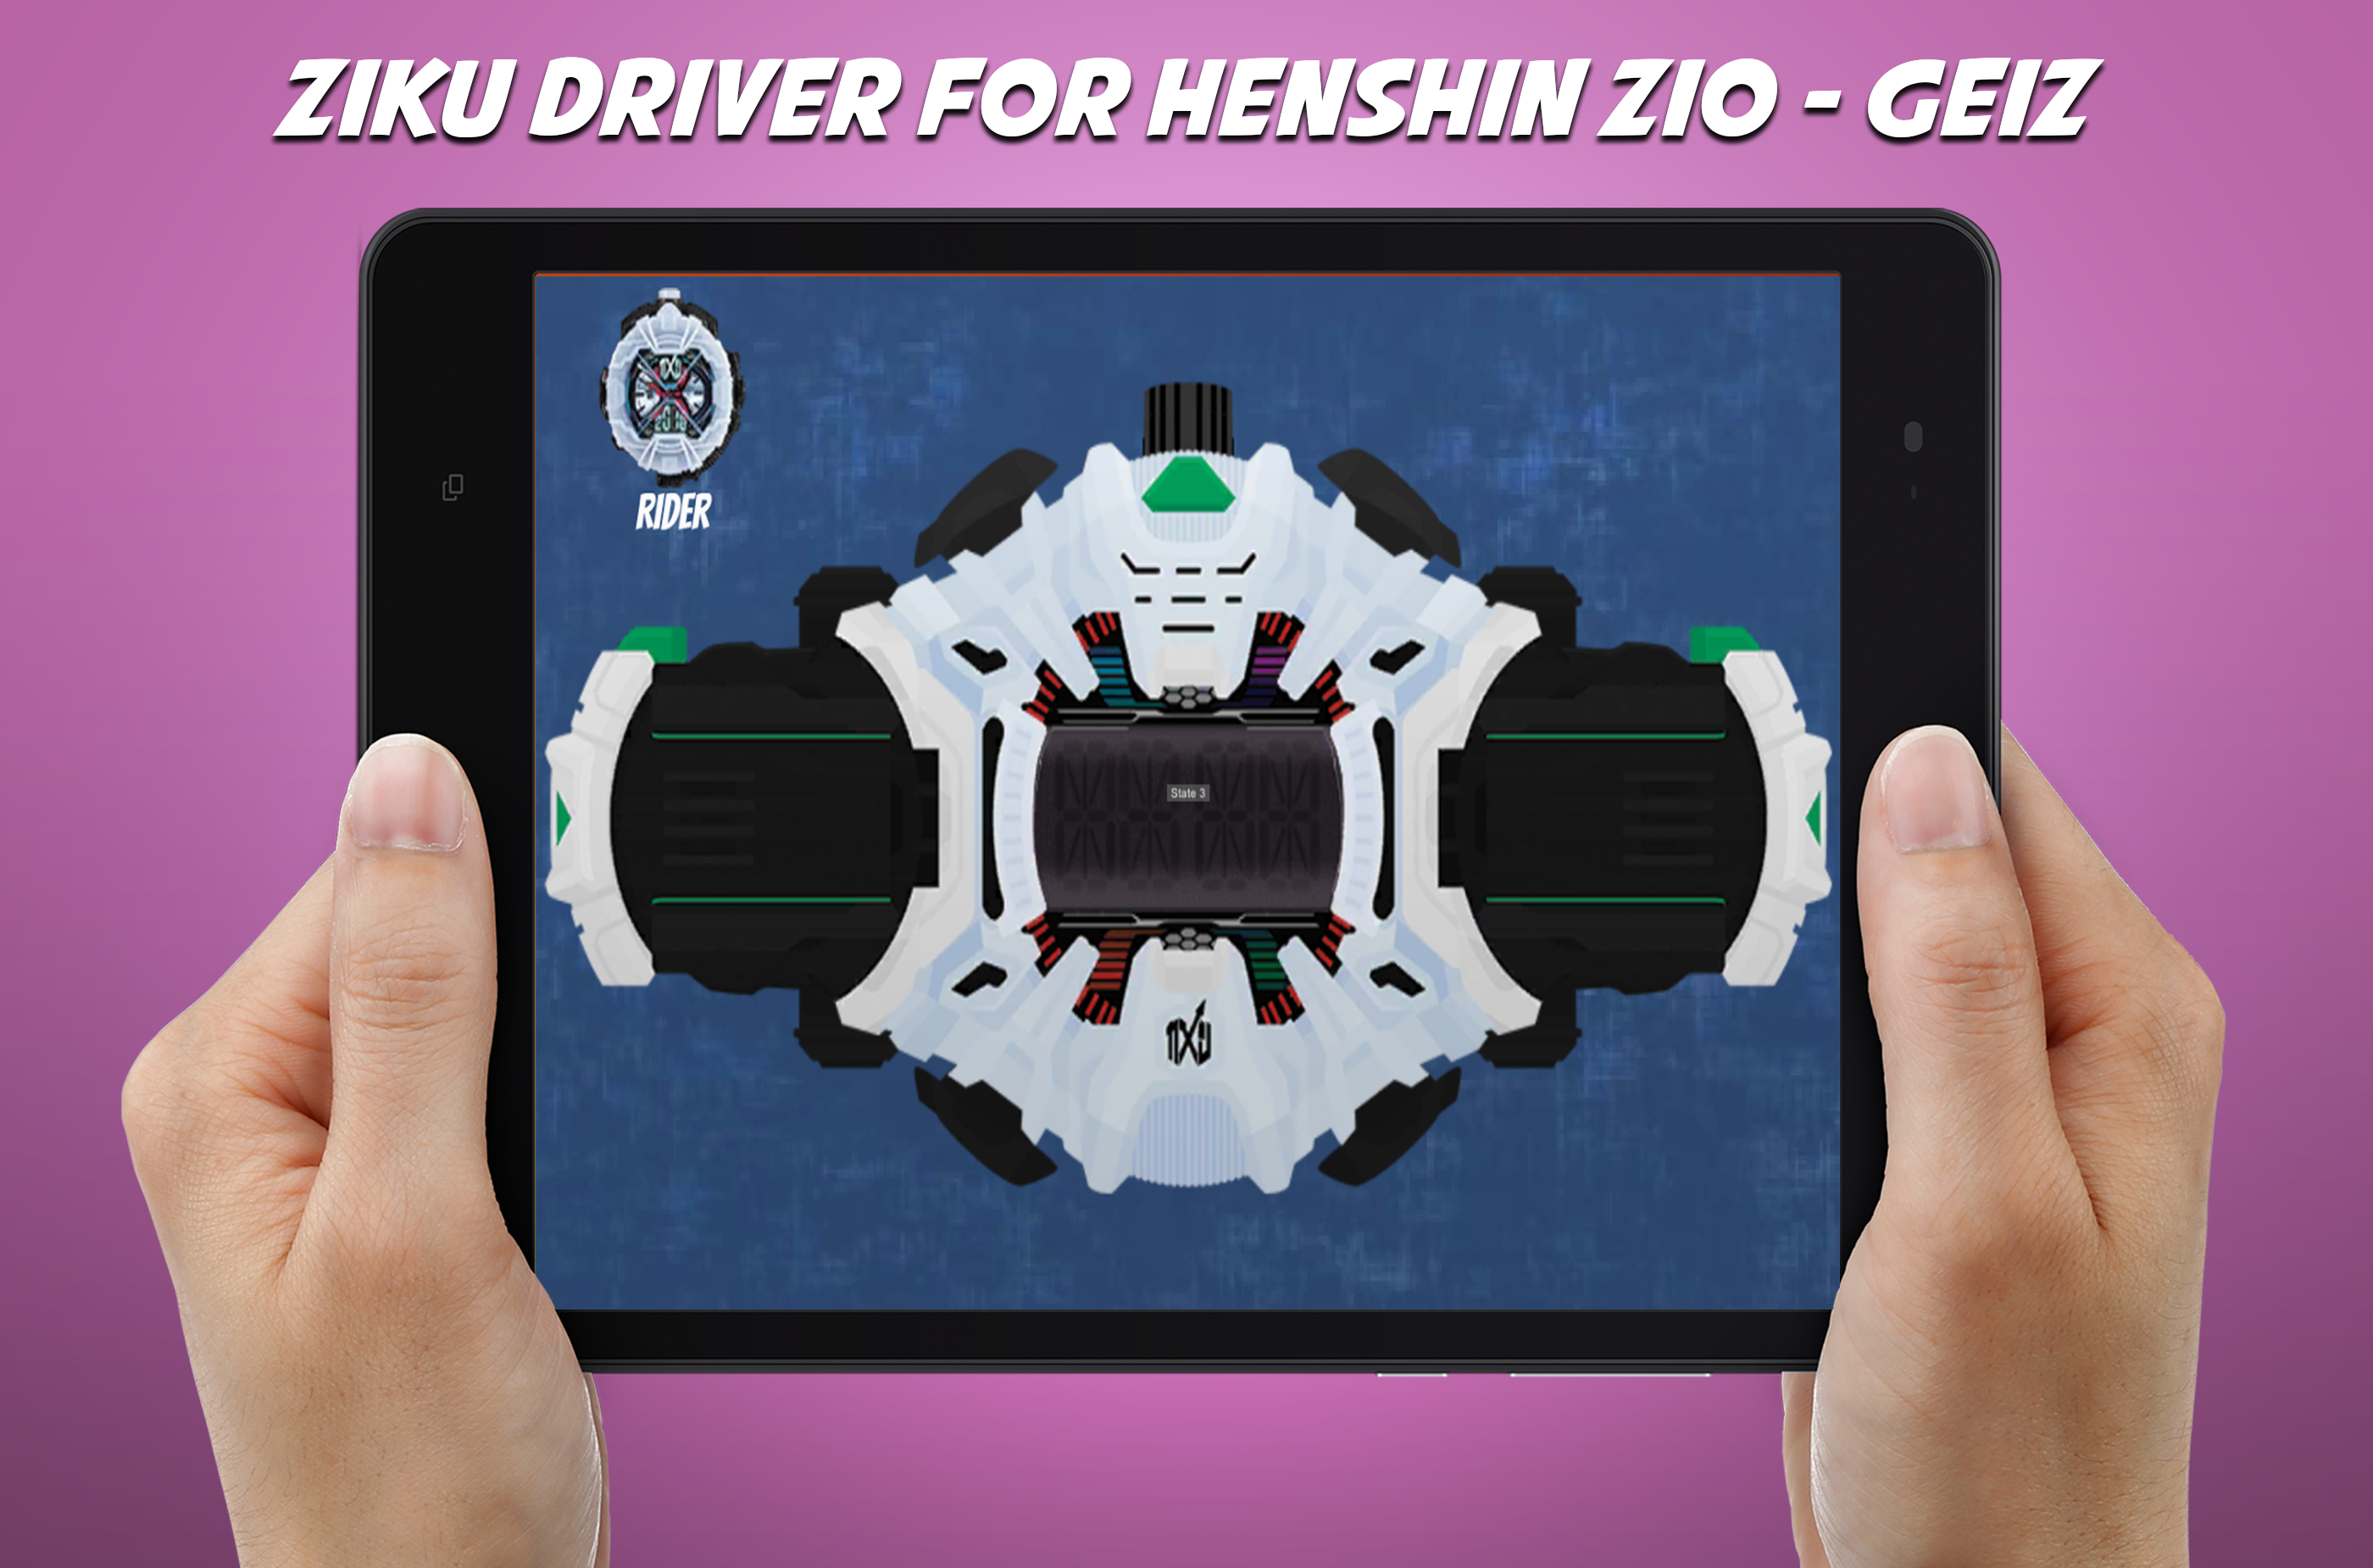 Screenshot 1 of Controlador DX Ziku para cinturón henshin Zio - Geiz 2.0